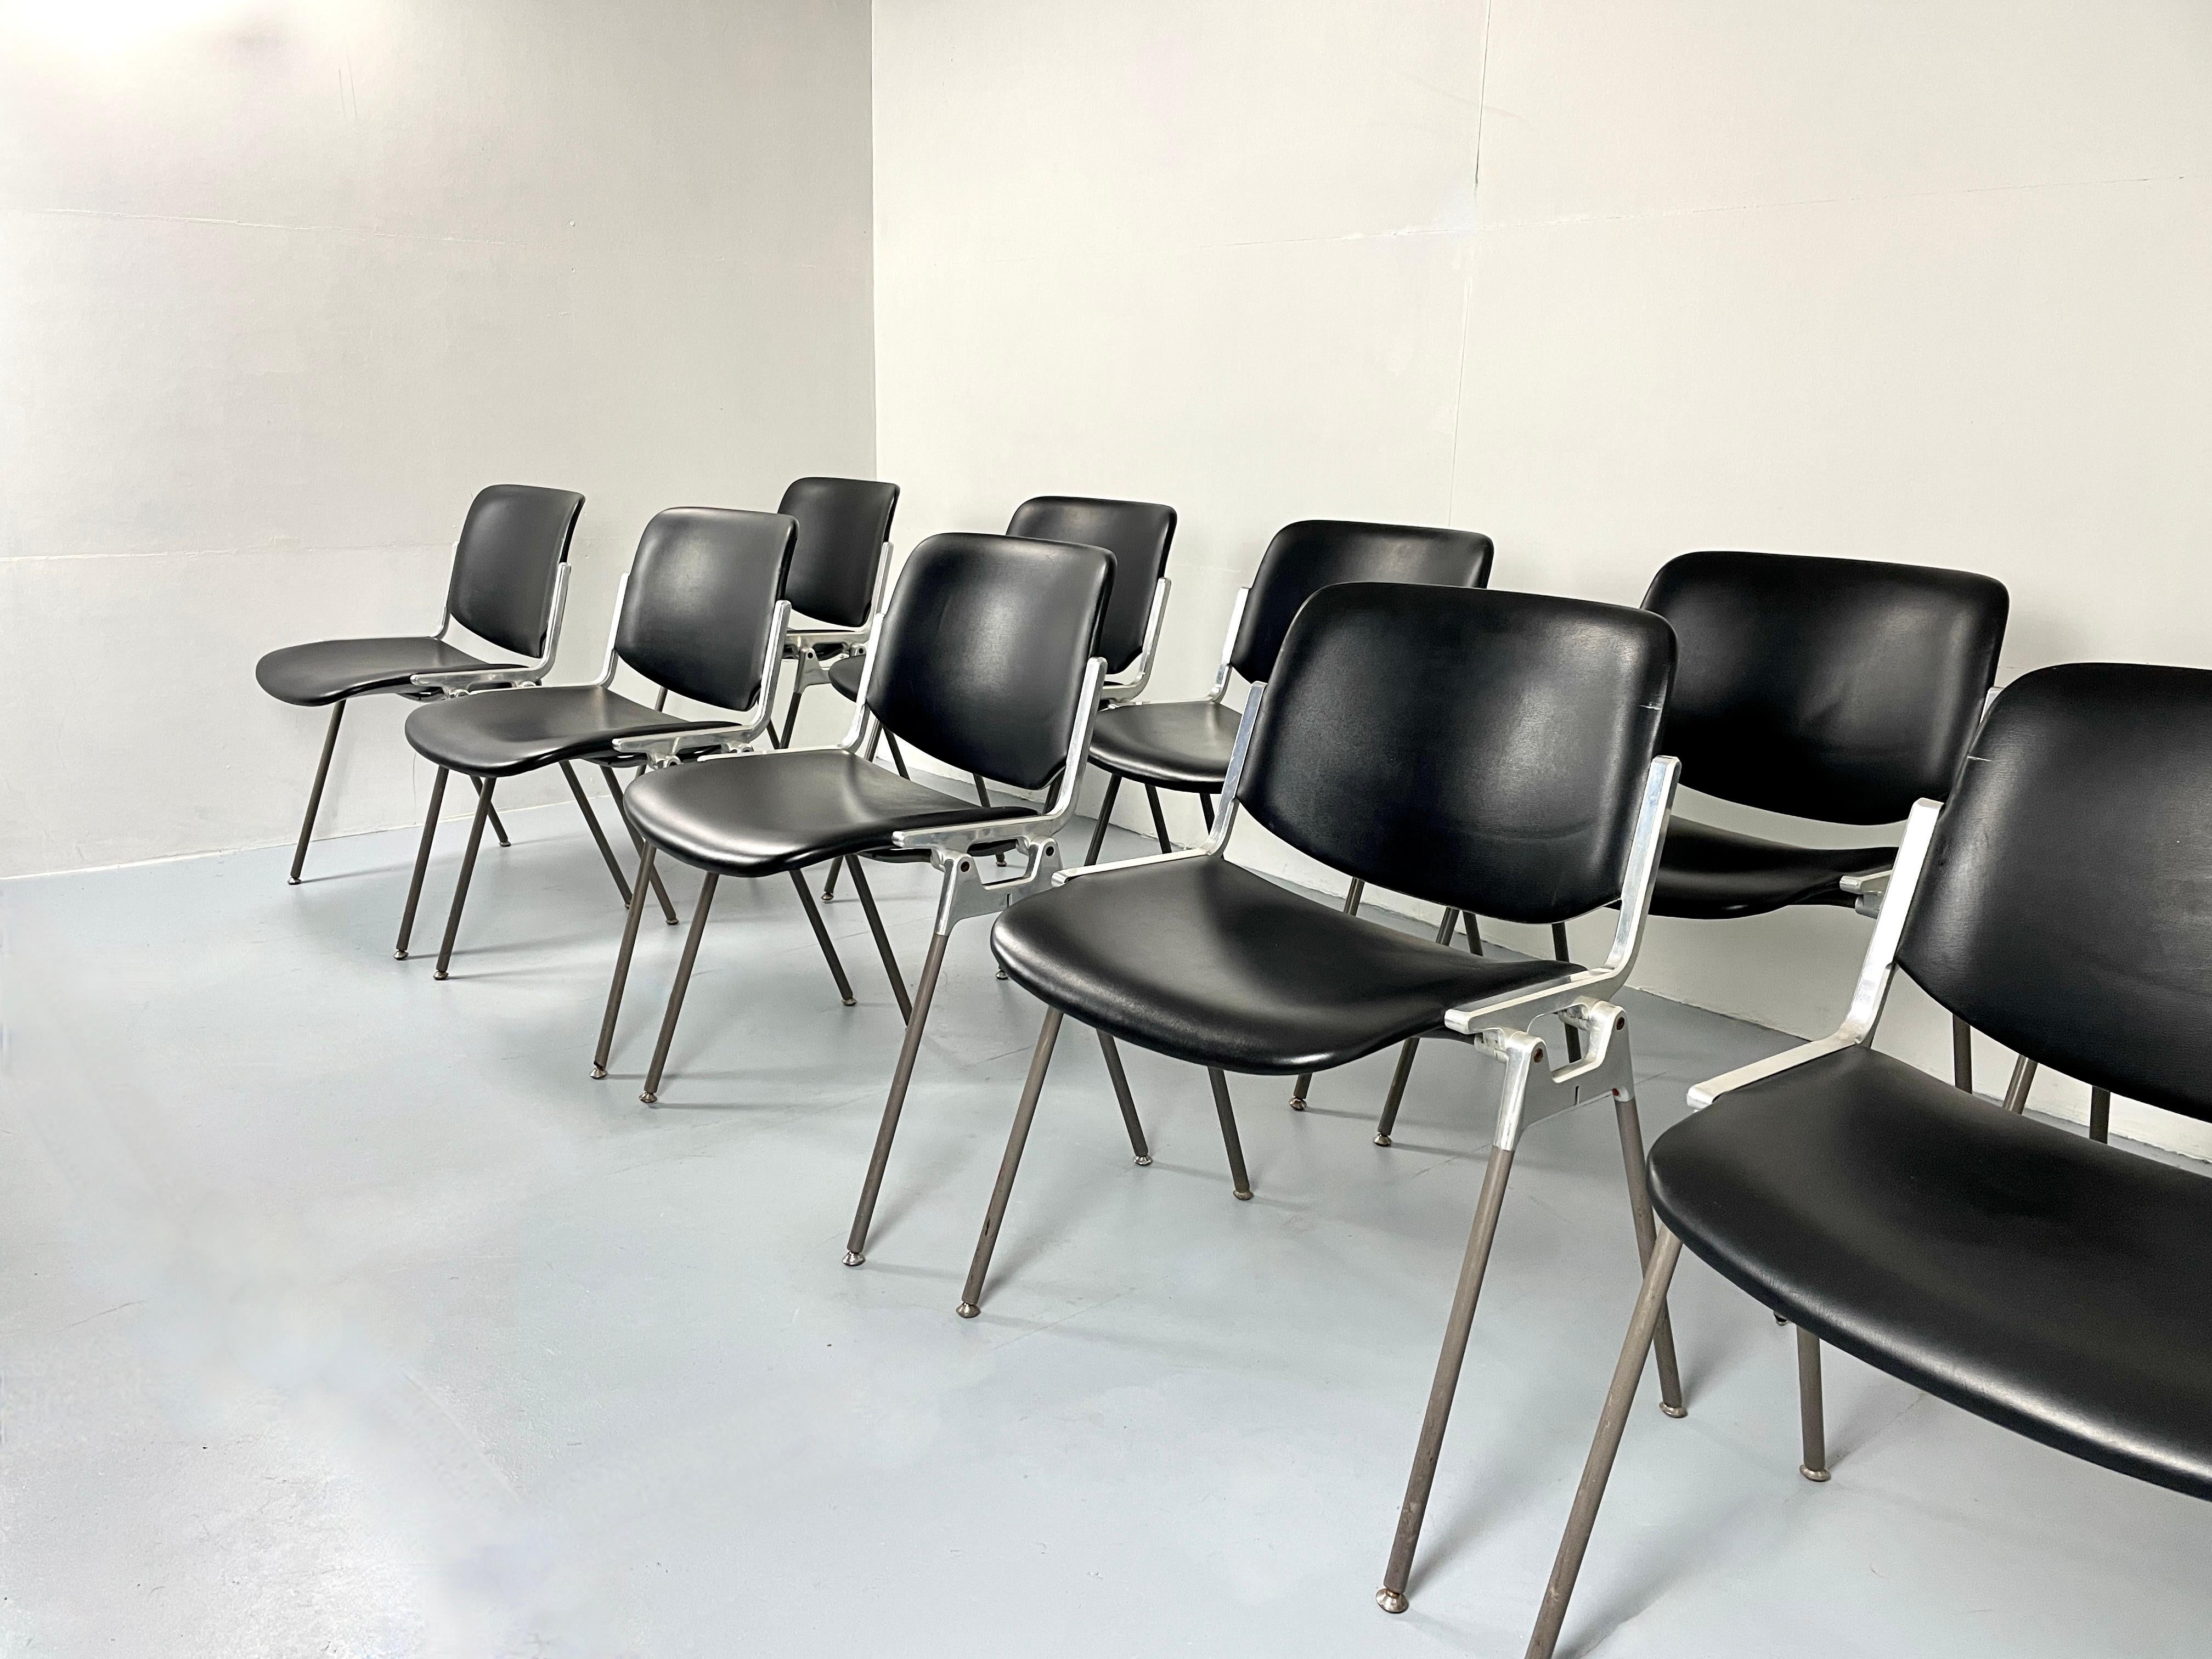 Chaises empilables italiennes emblématiques de Giancarlo Piretti pour Anonima Castelli.

DSC 106 est l'une des chaises les plus célèbres de la marque Castelli. conçue en 1965 par giancarlo piretti, elle reste un objet au design innovant et